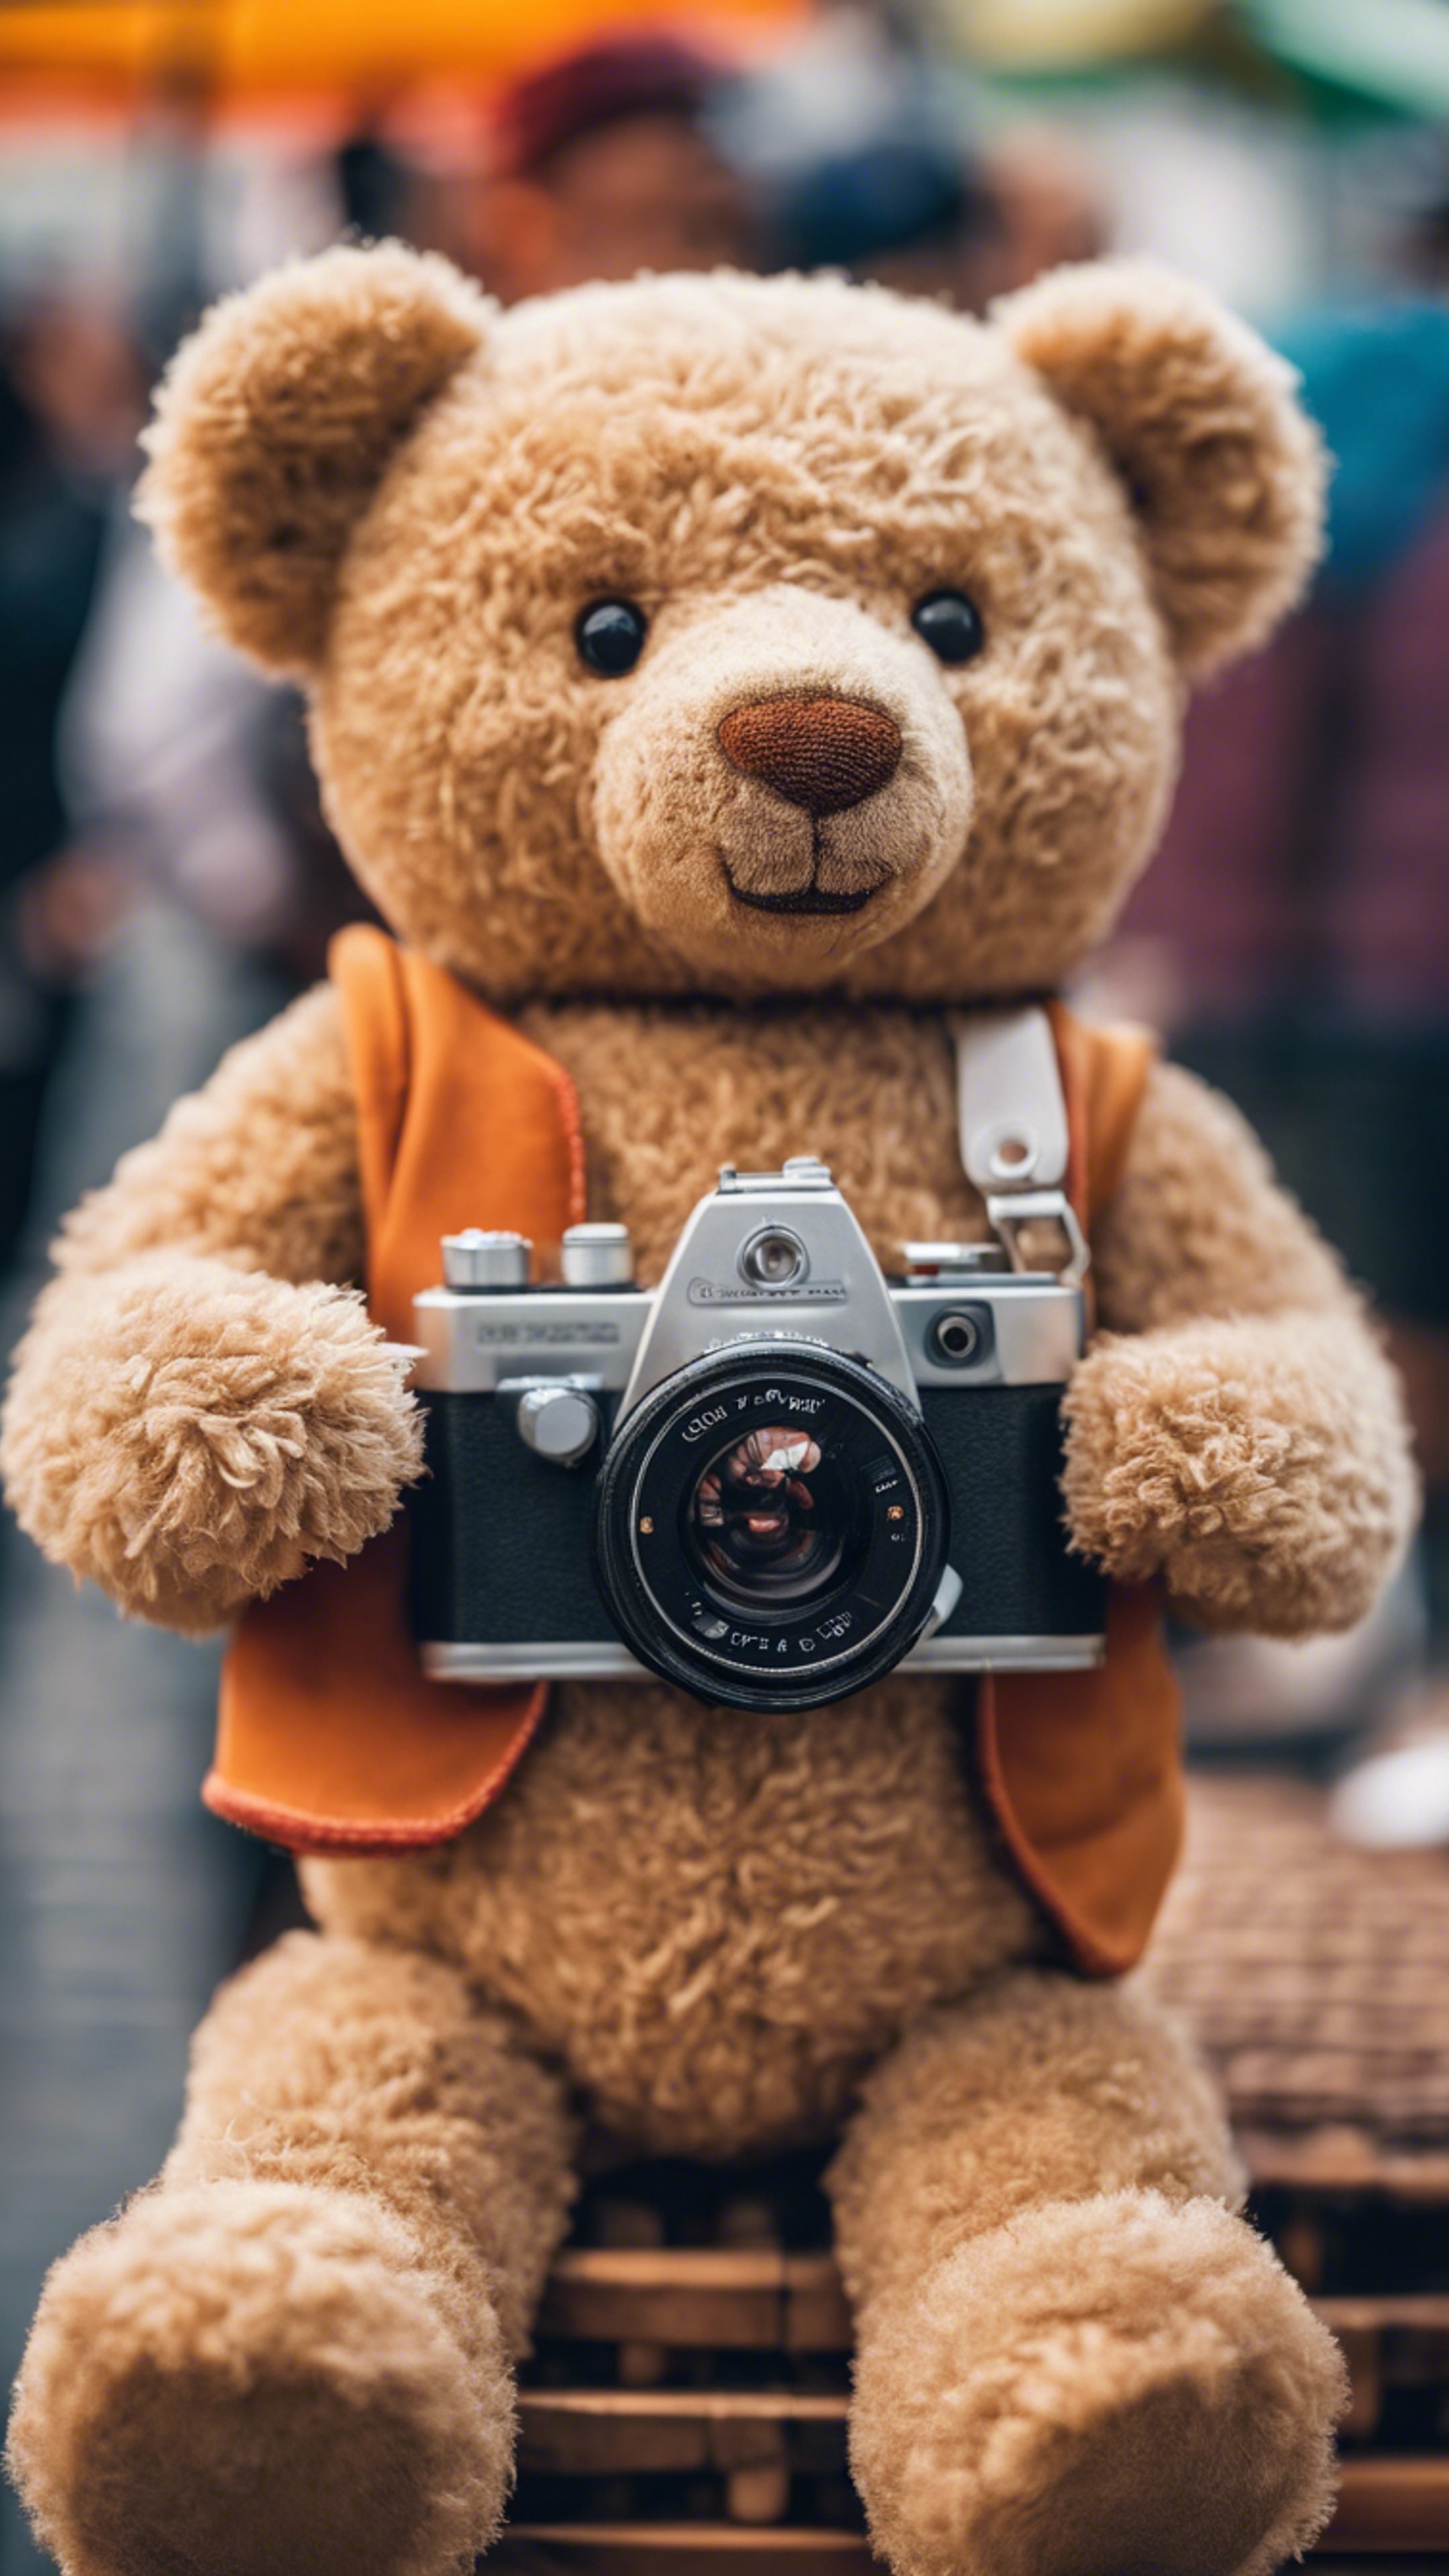 A teddy bear photography hobbyist, holding a toy camera, stood amidst a vibrant street fair. Divar kağızı[6bbb7c06ef4c4008bbb6]